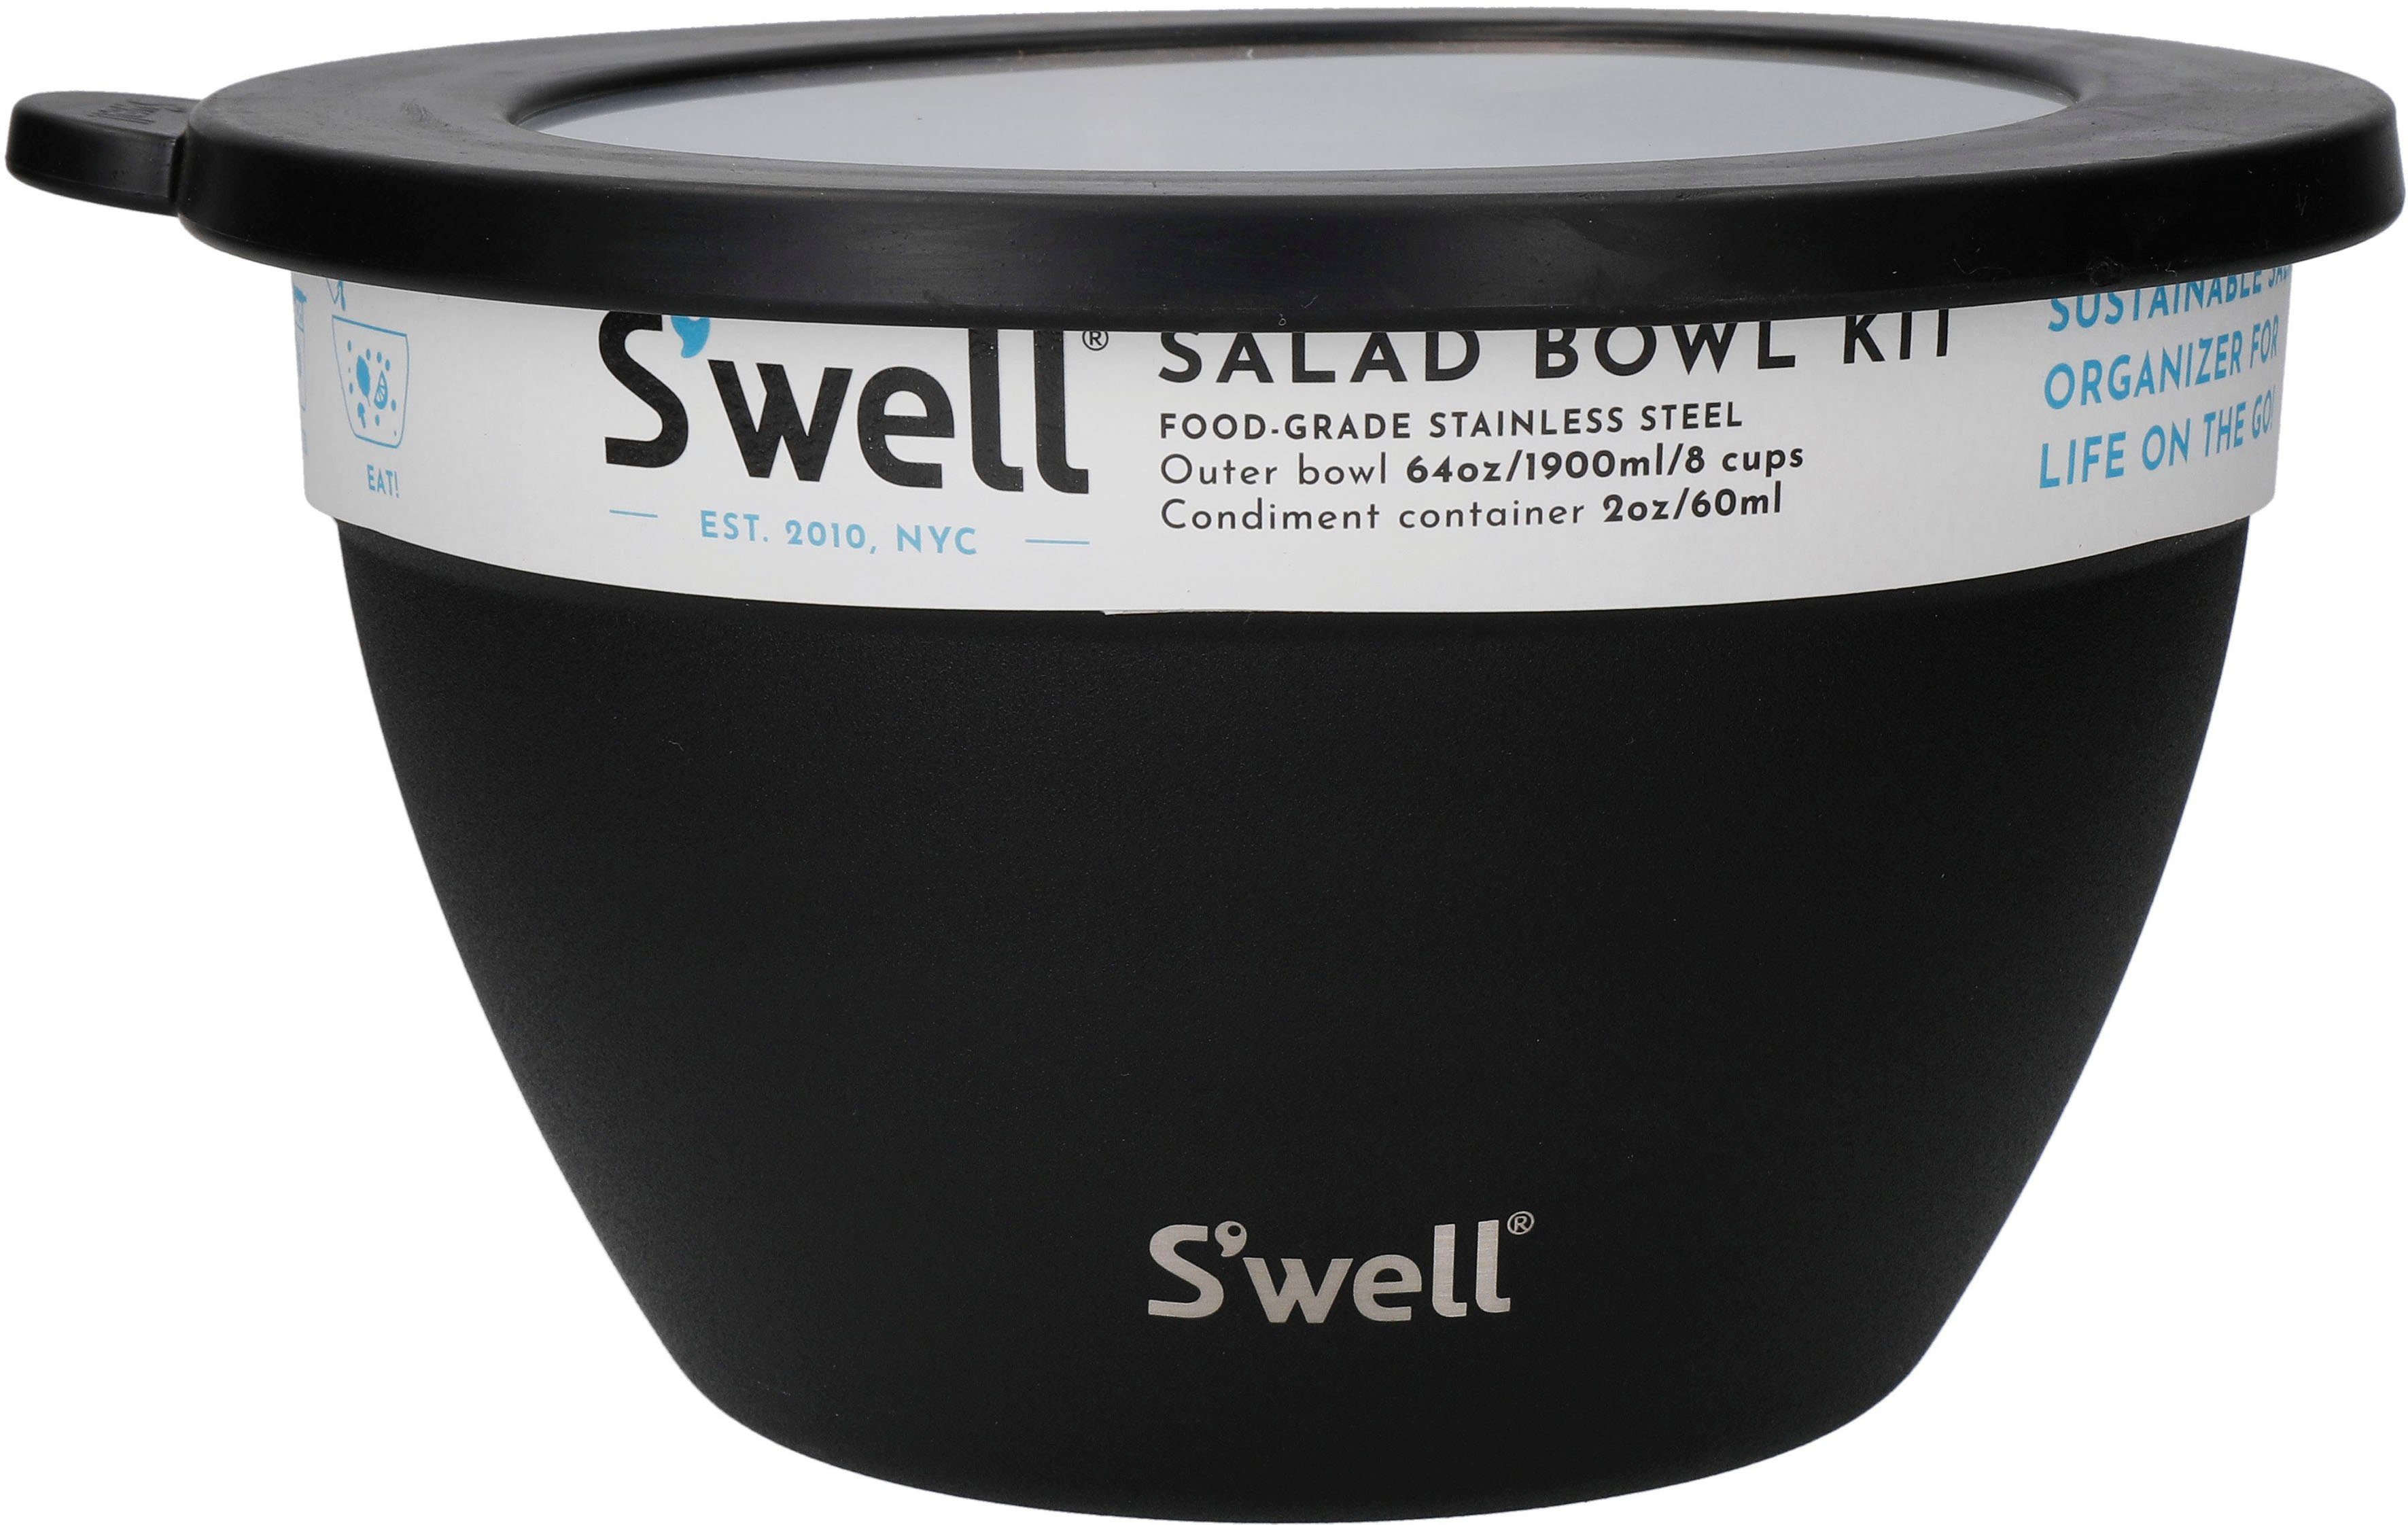 S'well Salatschüssel Kit, Edelstahl, Bowl Salad vakuumisolierten Therma-S'well®-Technologie, Schwarz 1.9L, S'well (3-tlg), Onyx Außenschale